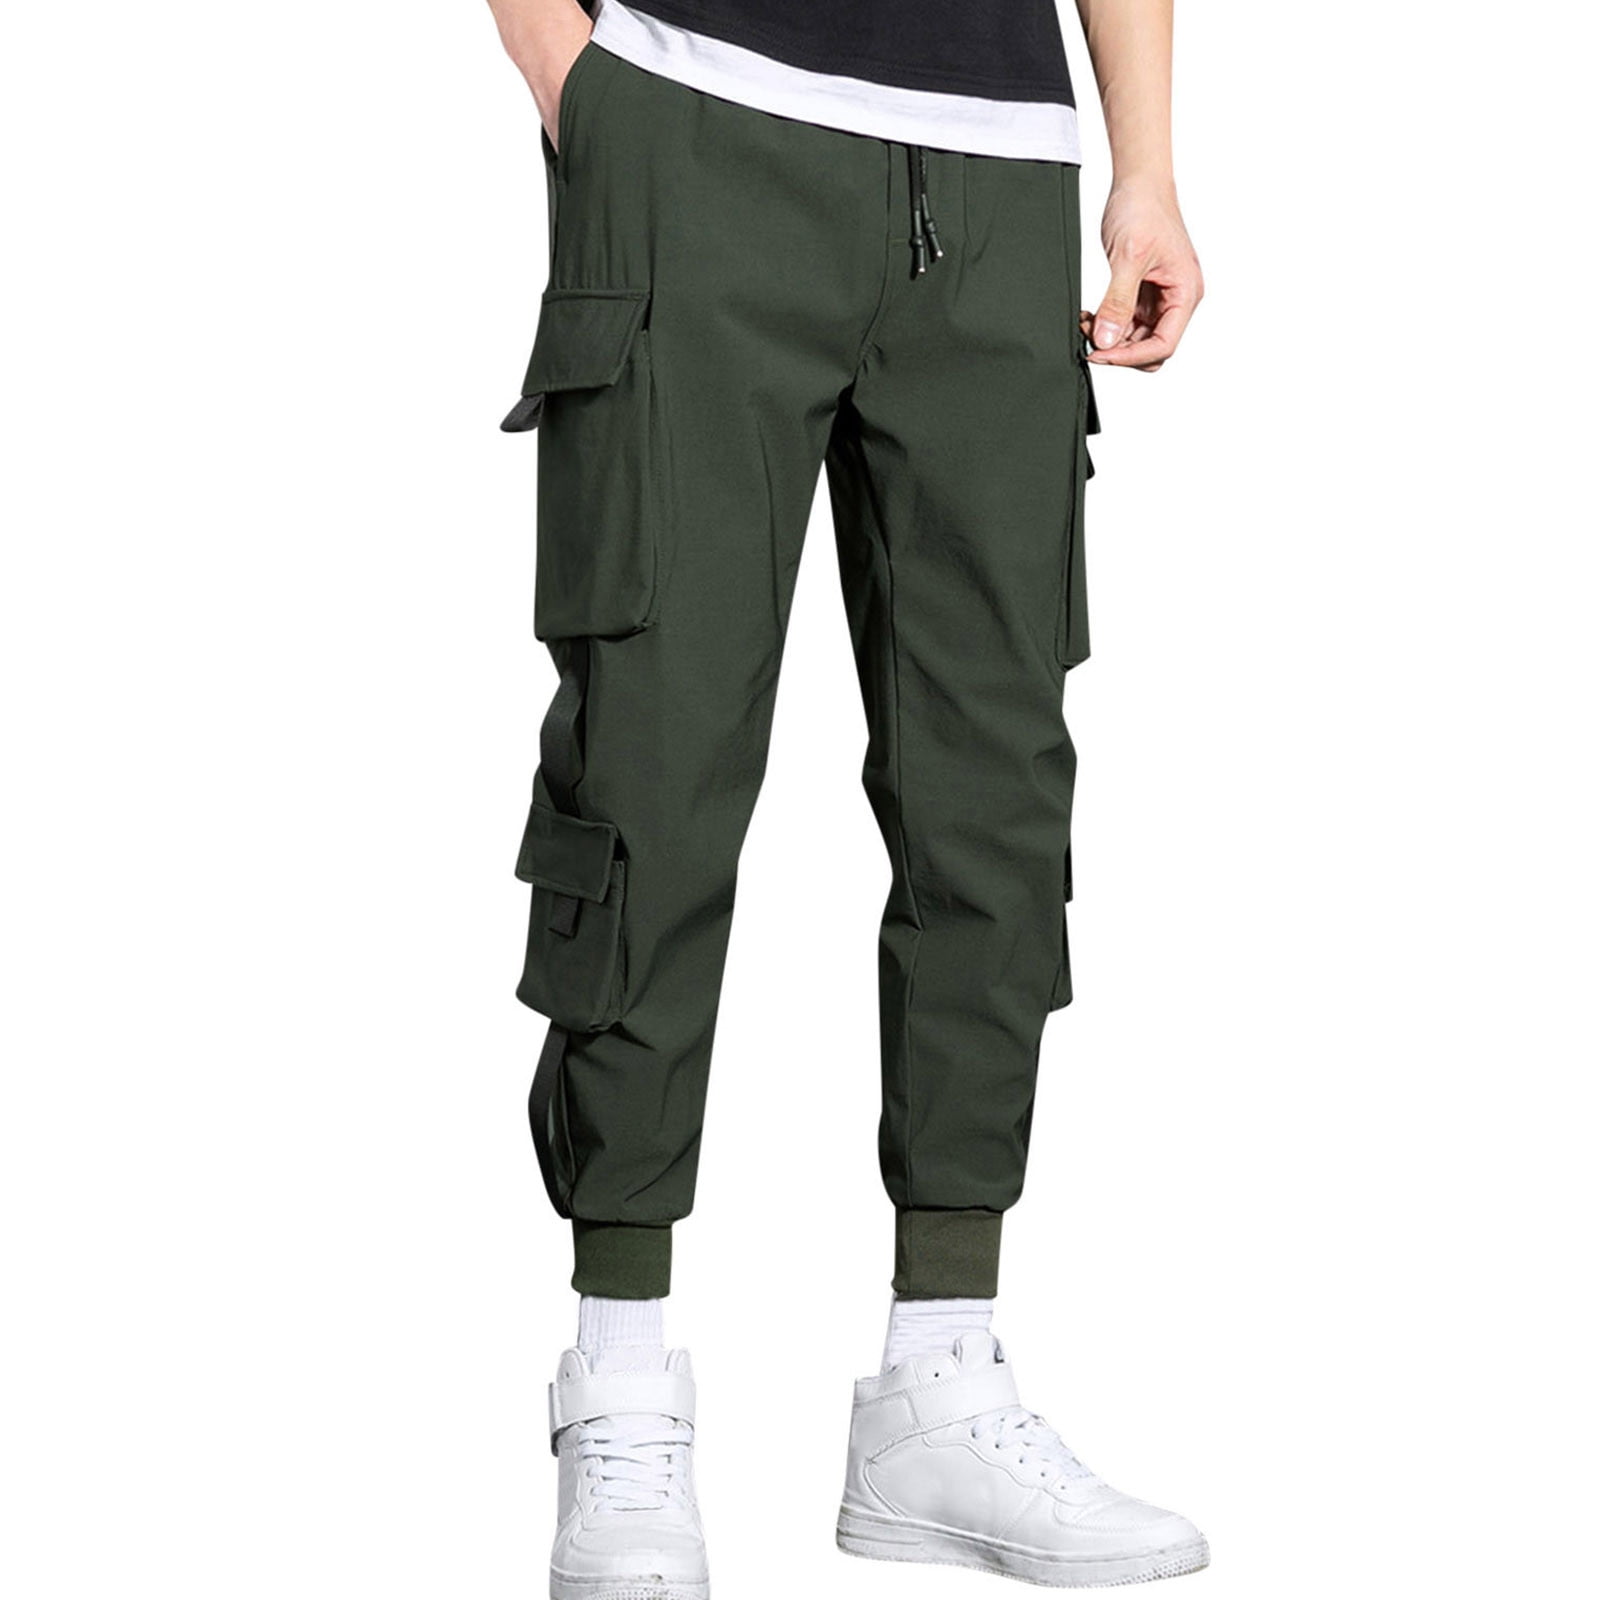 Cargo Sweatpants For Men Cargo Pant Solid Green L - Walmart.com